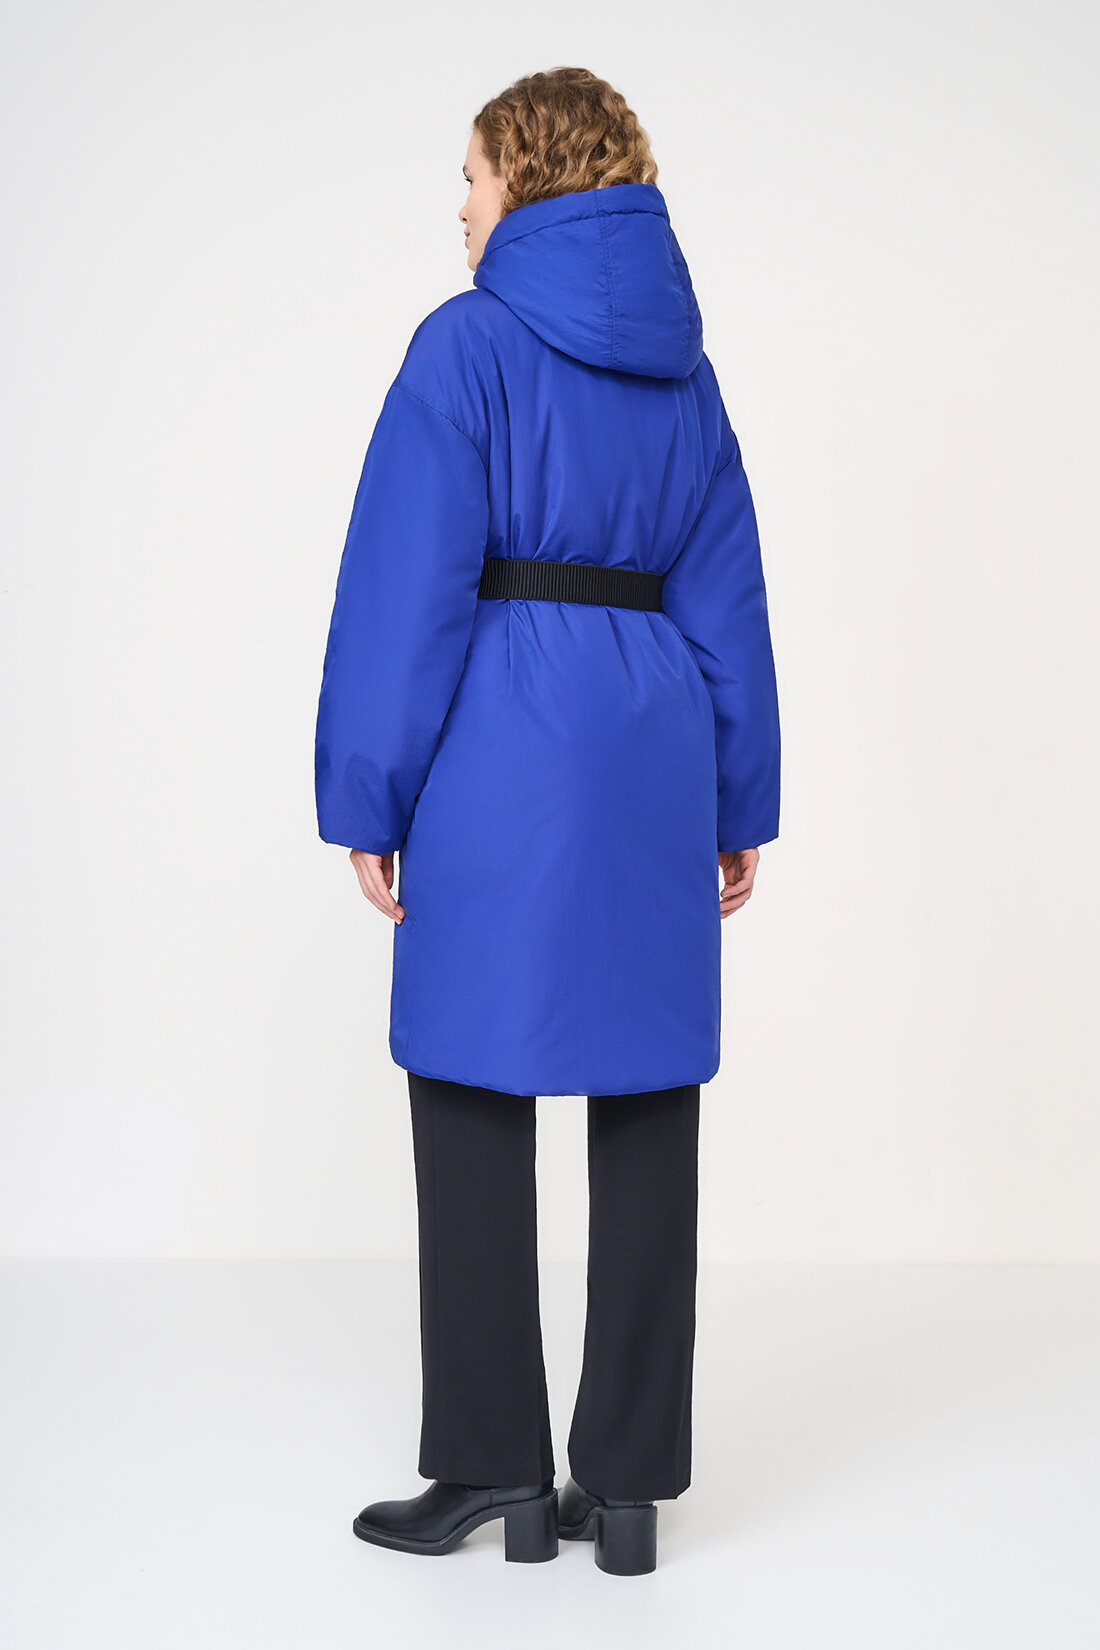 куртка Baon, демисезон/зима, удлиненная, силуэт прямой, капюшон, карманы, пояс/ремень, ветрозащитная, утепленная, манжеты, размер L, синий - фотография № 2